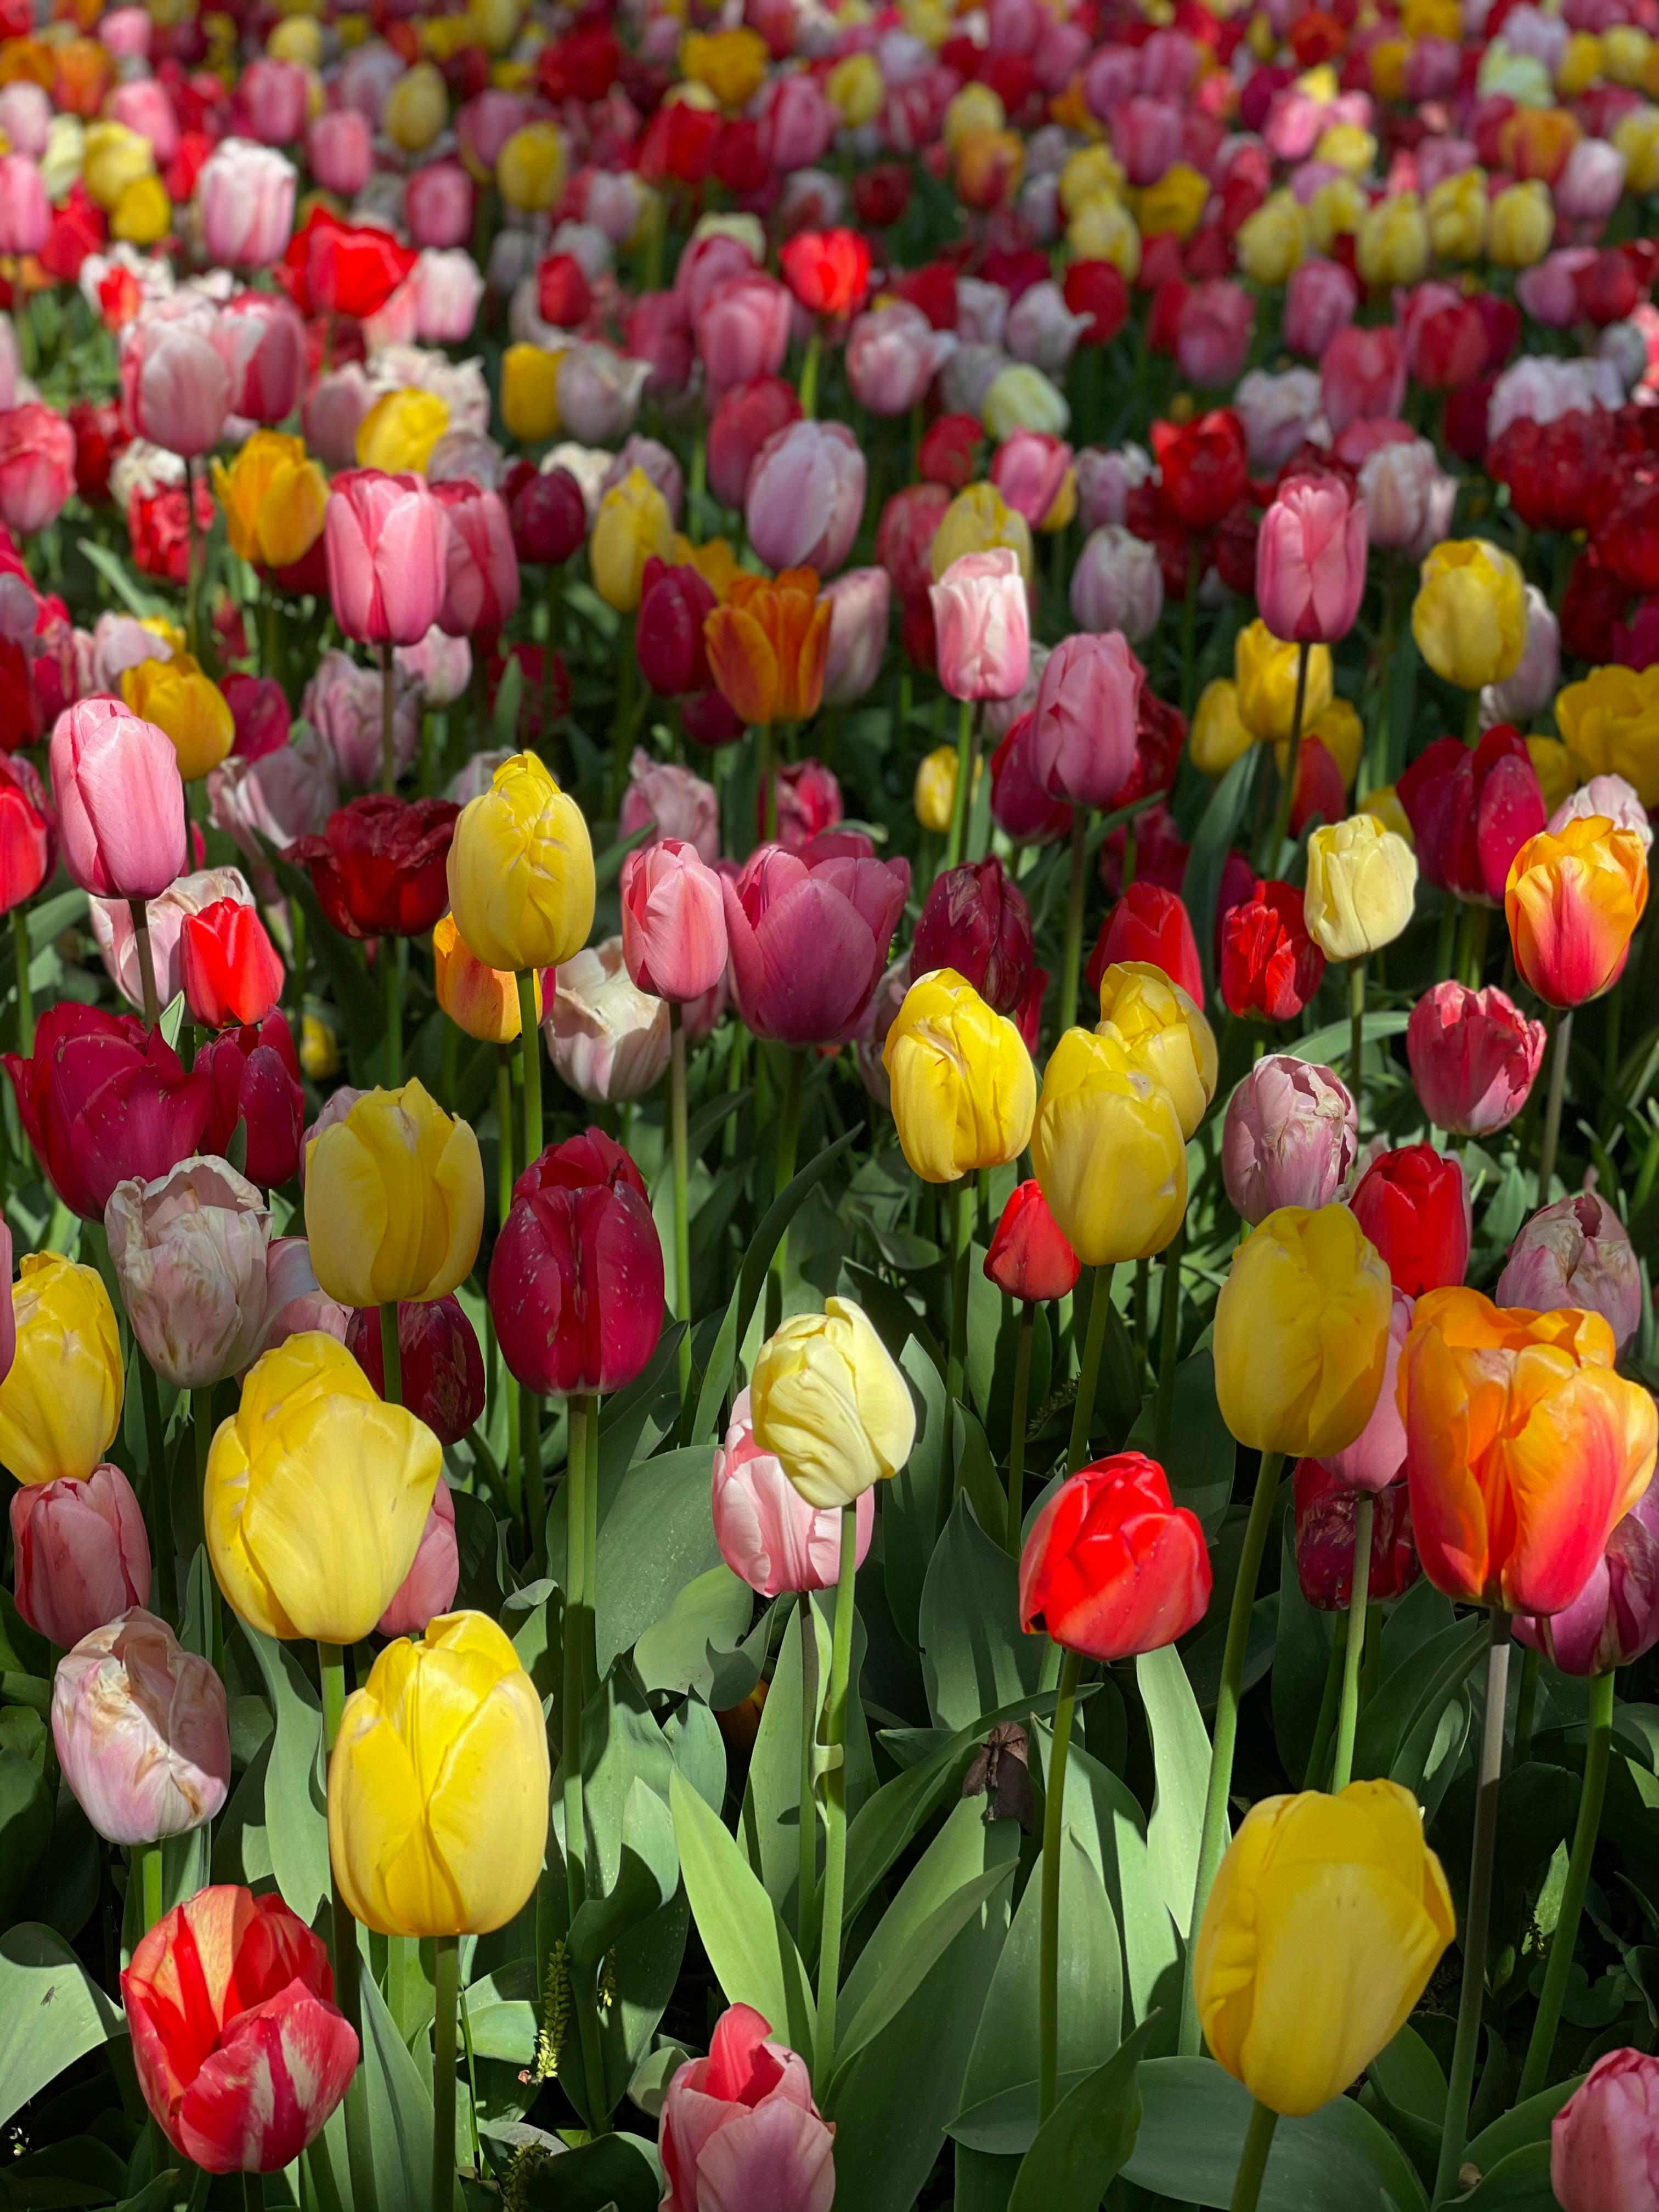 Yellow Tulip Flower · Free Stock Photo